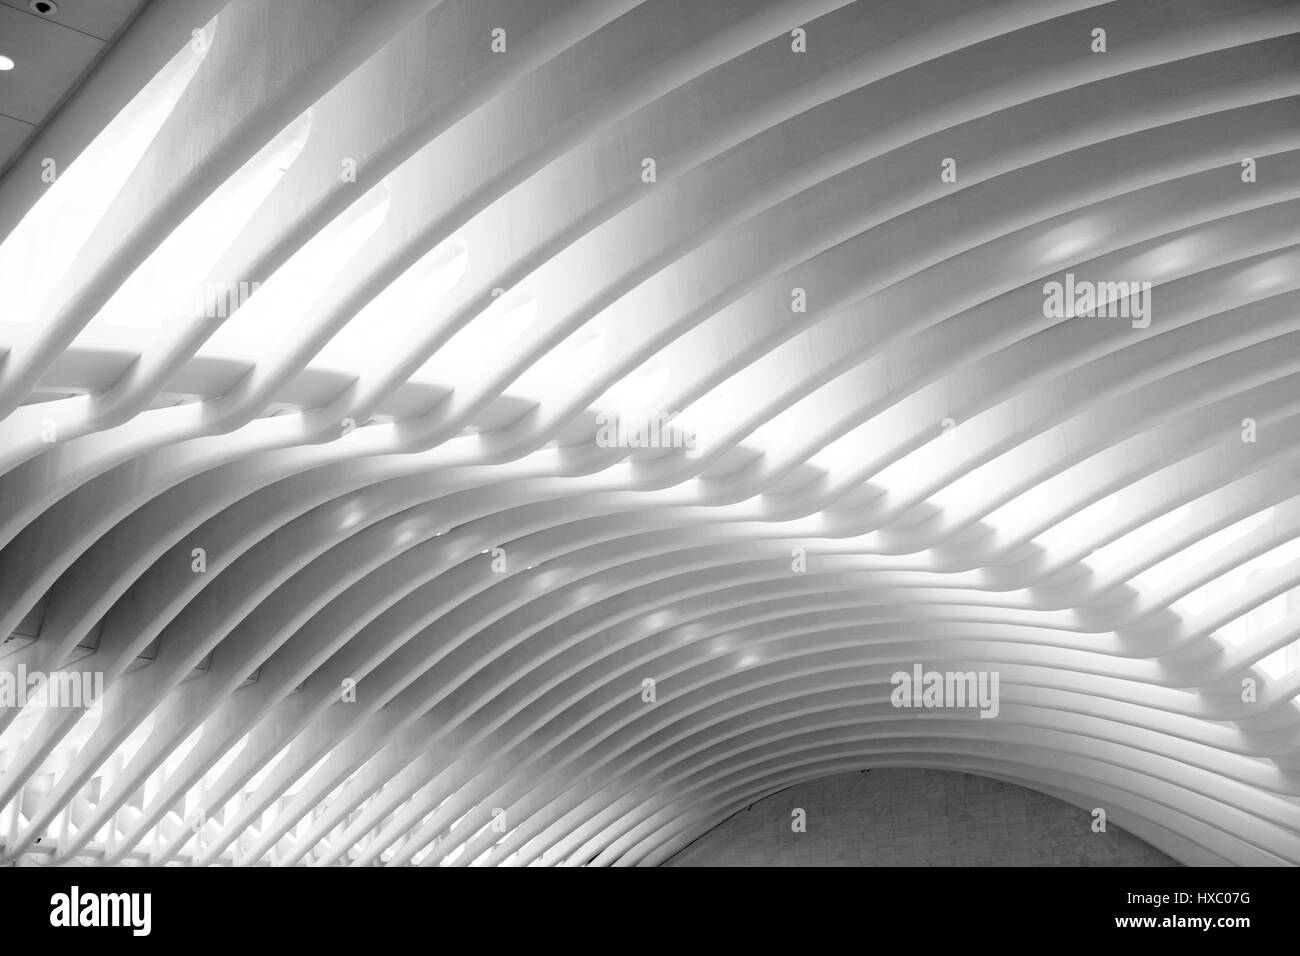 NEW YORK CITY - 1. Oktober 2016: architektonische Details der Decke das Oculus, Santiago Calatrava moderne u-Bahnstation in Lower Manhattan. Blac Stockfoto